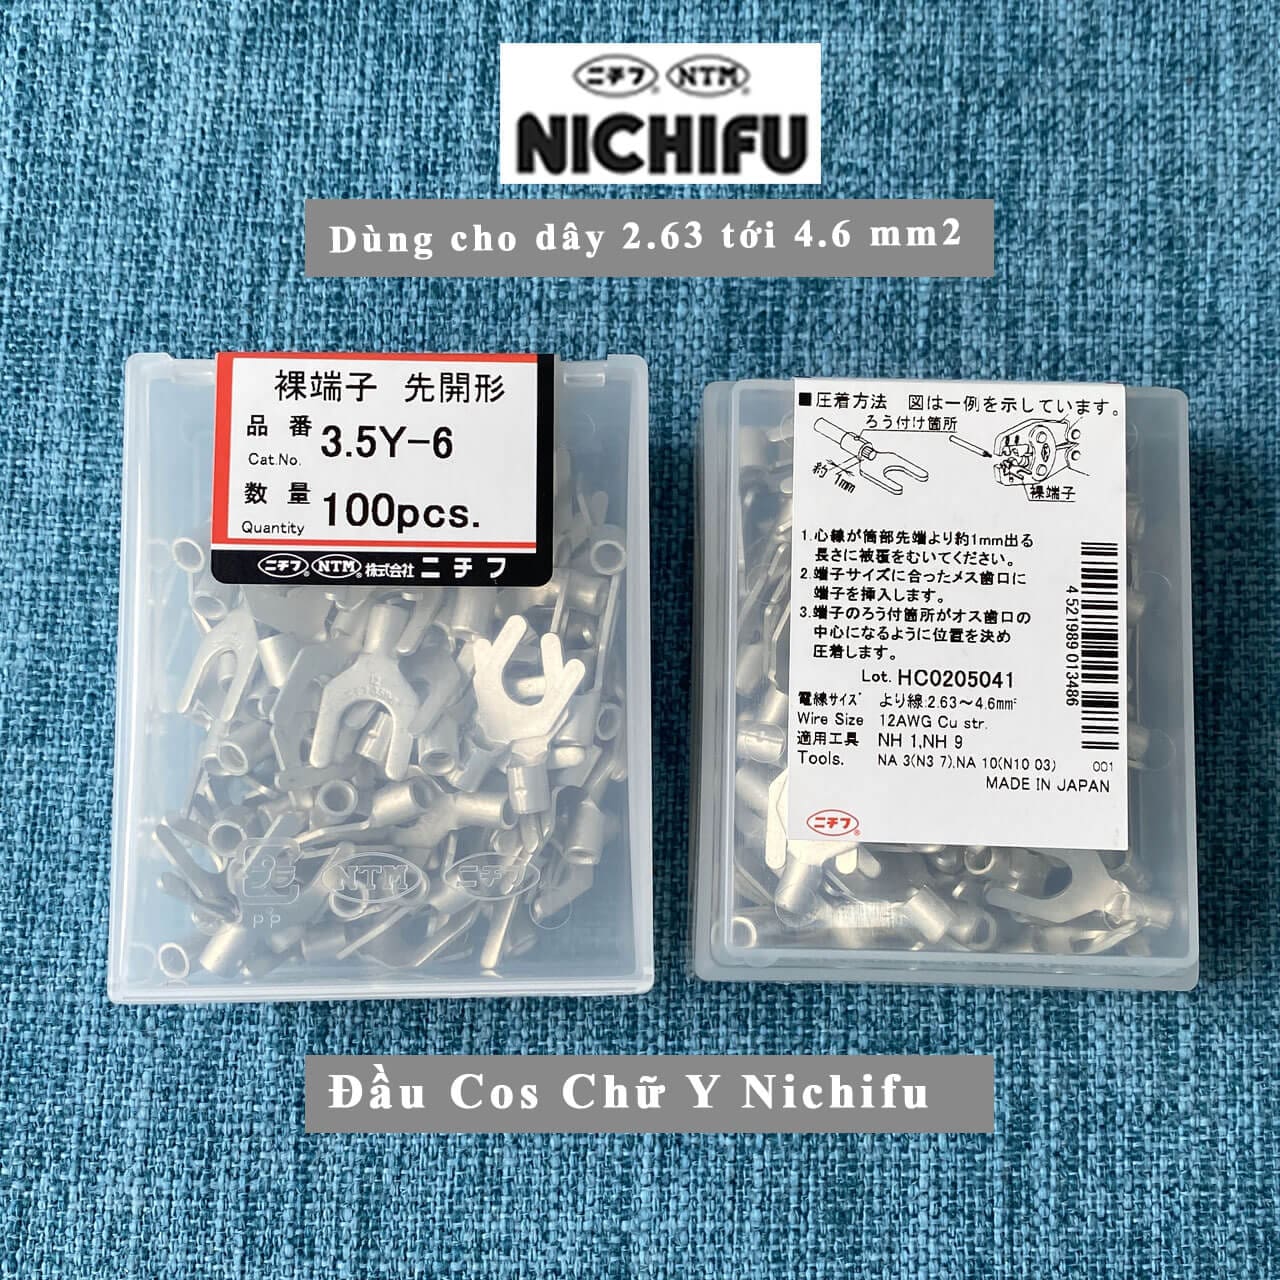 nichifu 3.5y-6; đầu cốt nichifu 3.5y-6; đầu cos 3.5y-6 nichifu; đầu cos chỉa nichifu 3.5y-6; mua cos 3.5y-6 nichifu; mua cốt 3.5y-6; cos chỉa y nichifu 4mm; cos chỉa nichifu 3.5y;